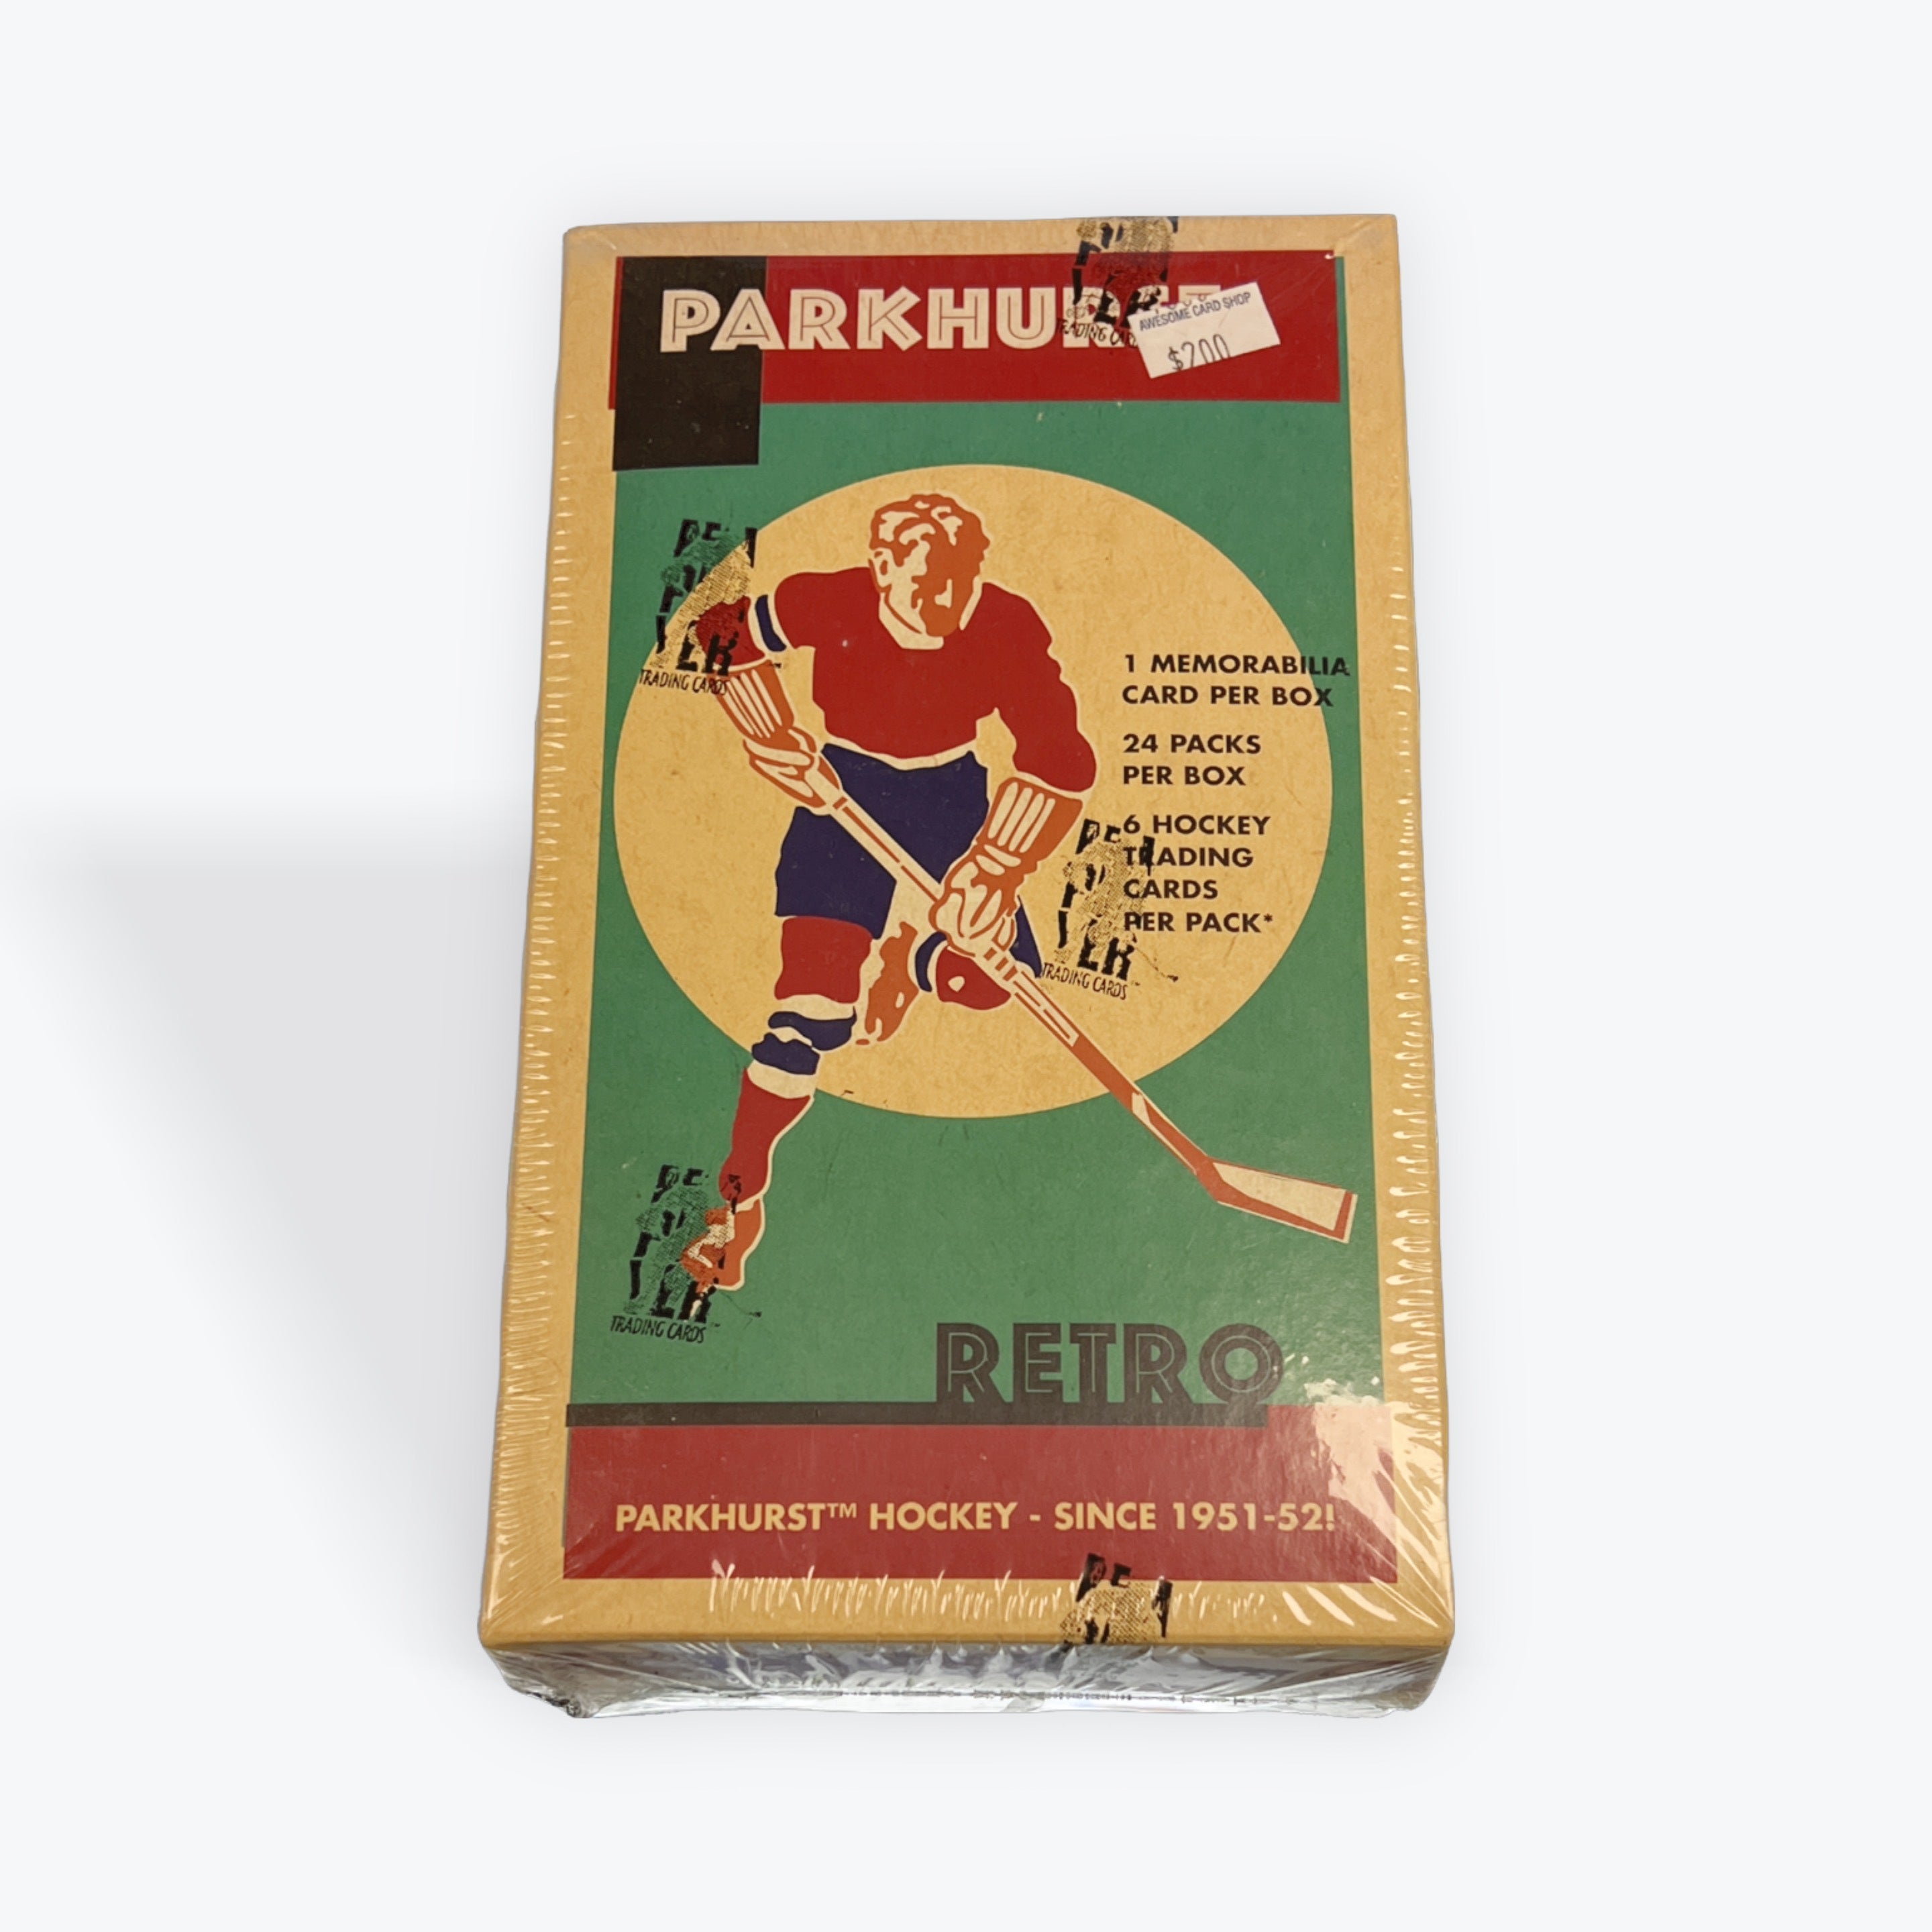 2002/03 Parkhurst Retro Hockey Box